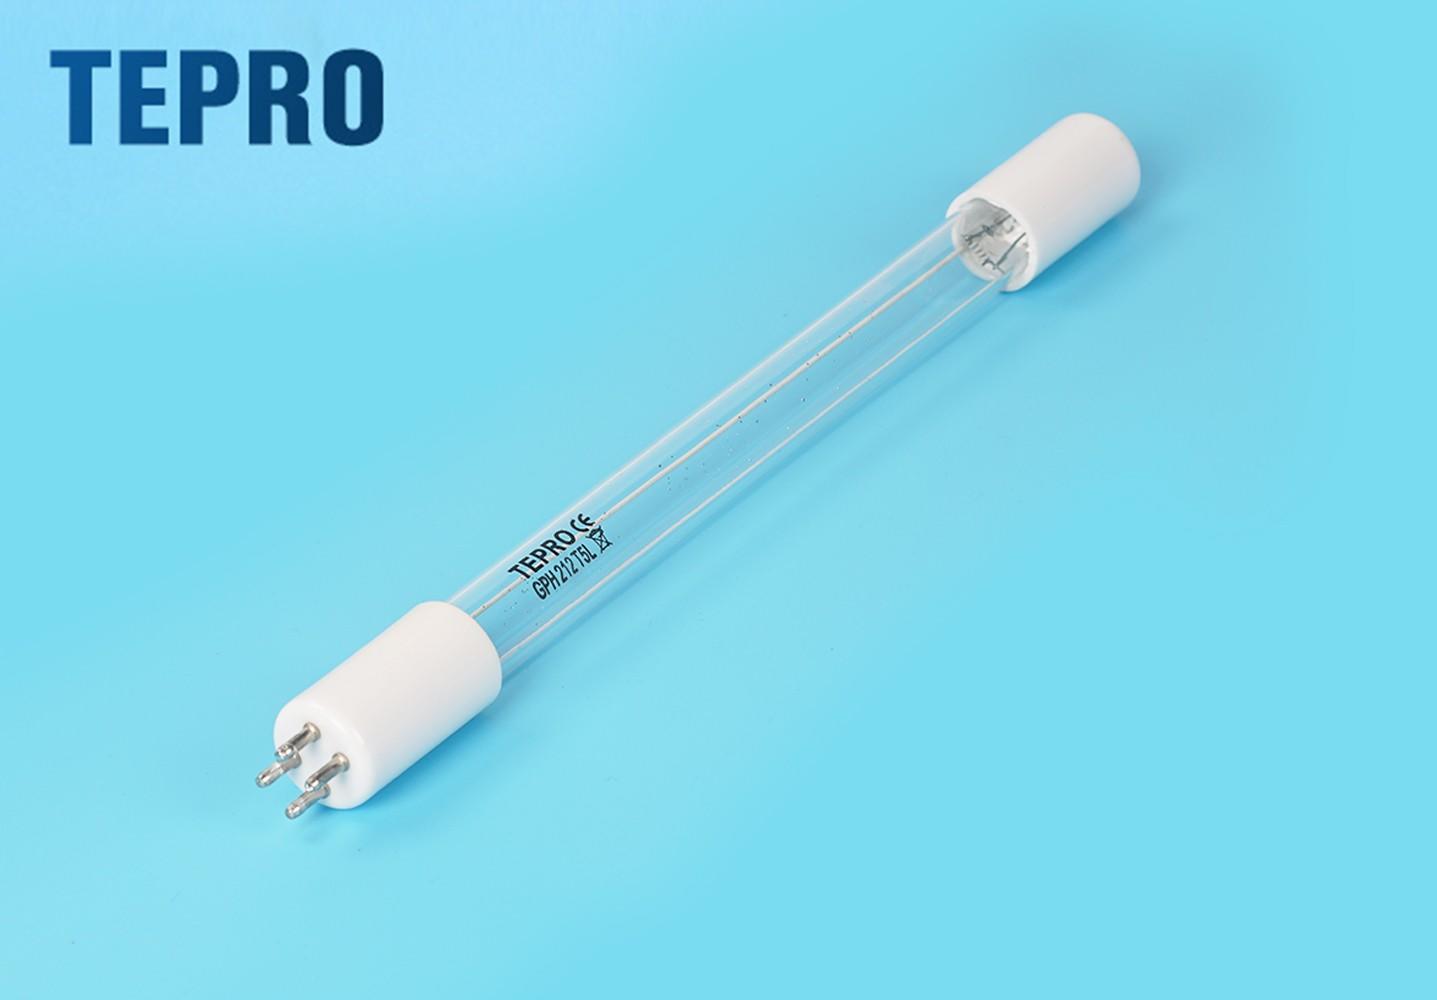 Tepro led uv light supplier-1